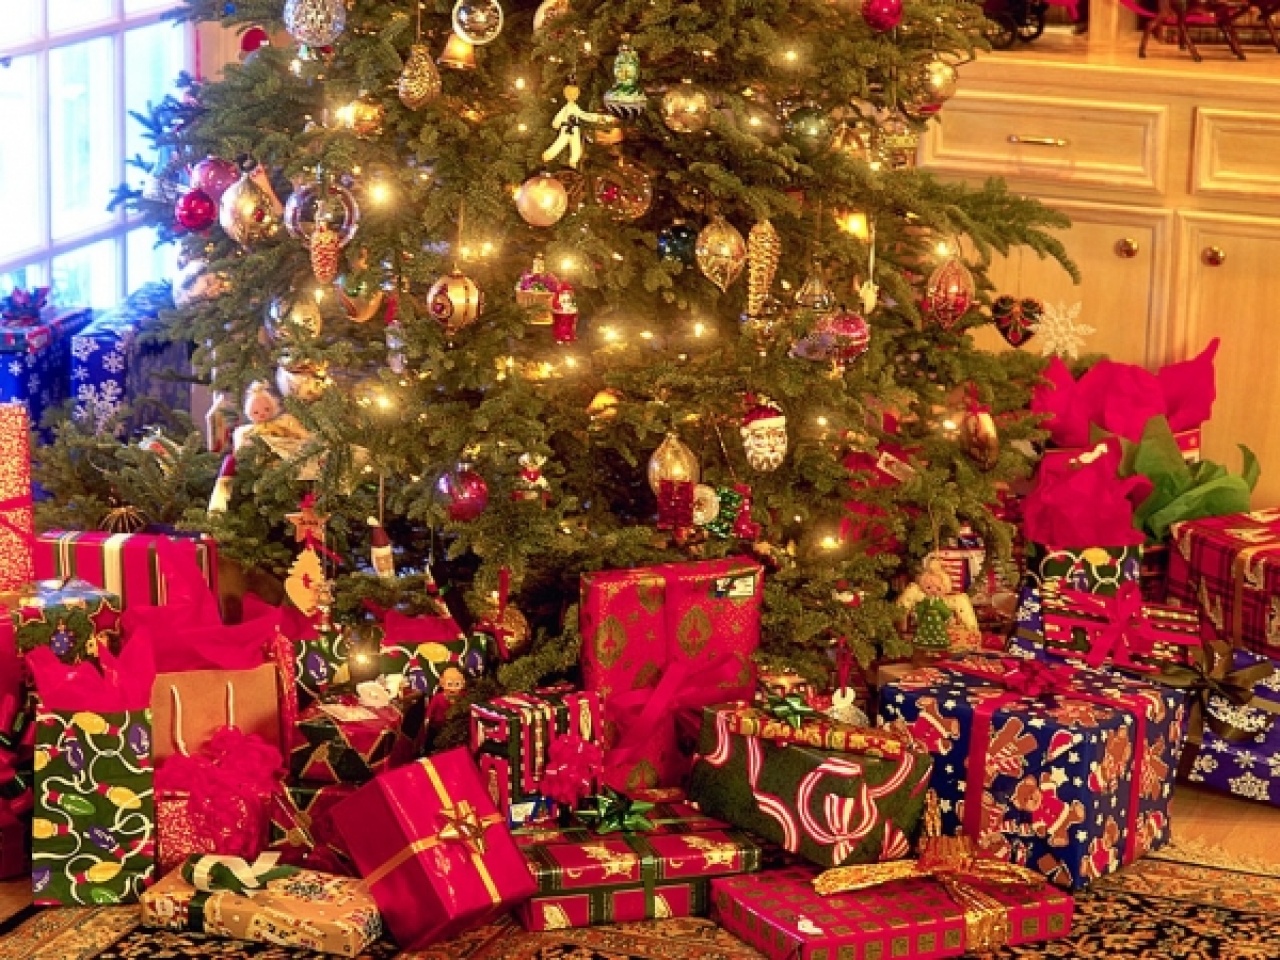 Karácsony - Növekvő forgalomra számítanak az áruházak 